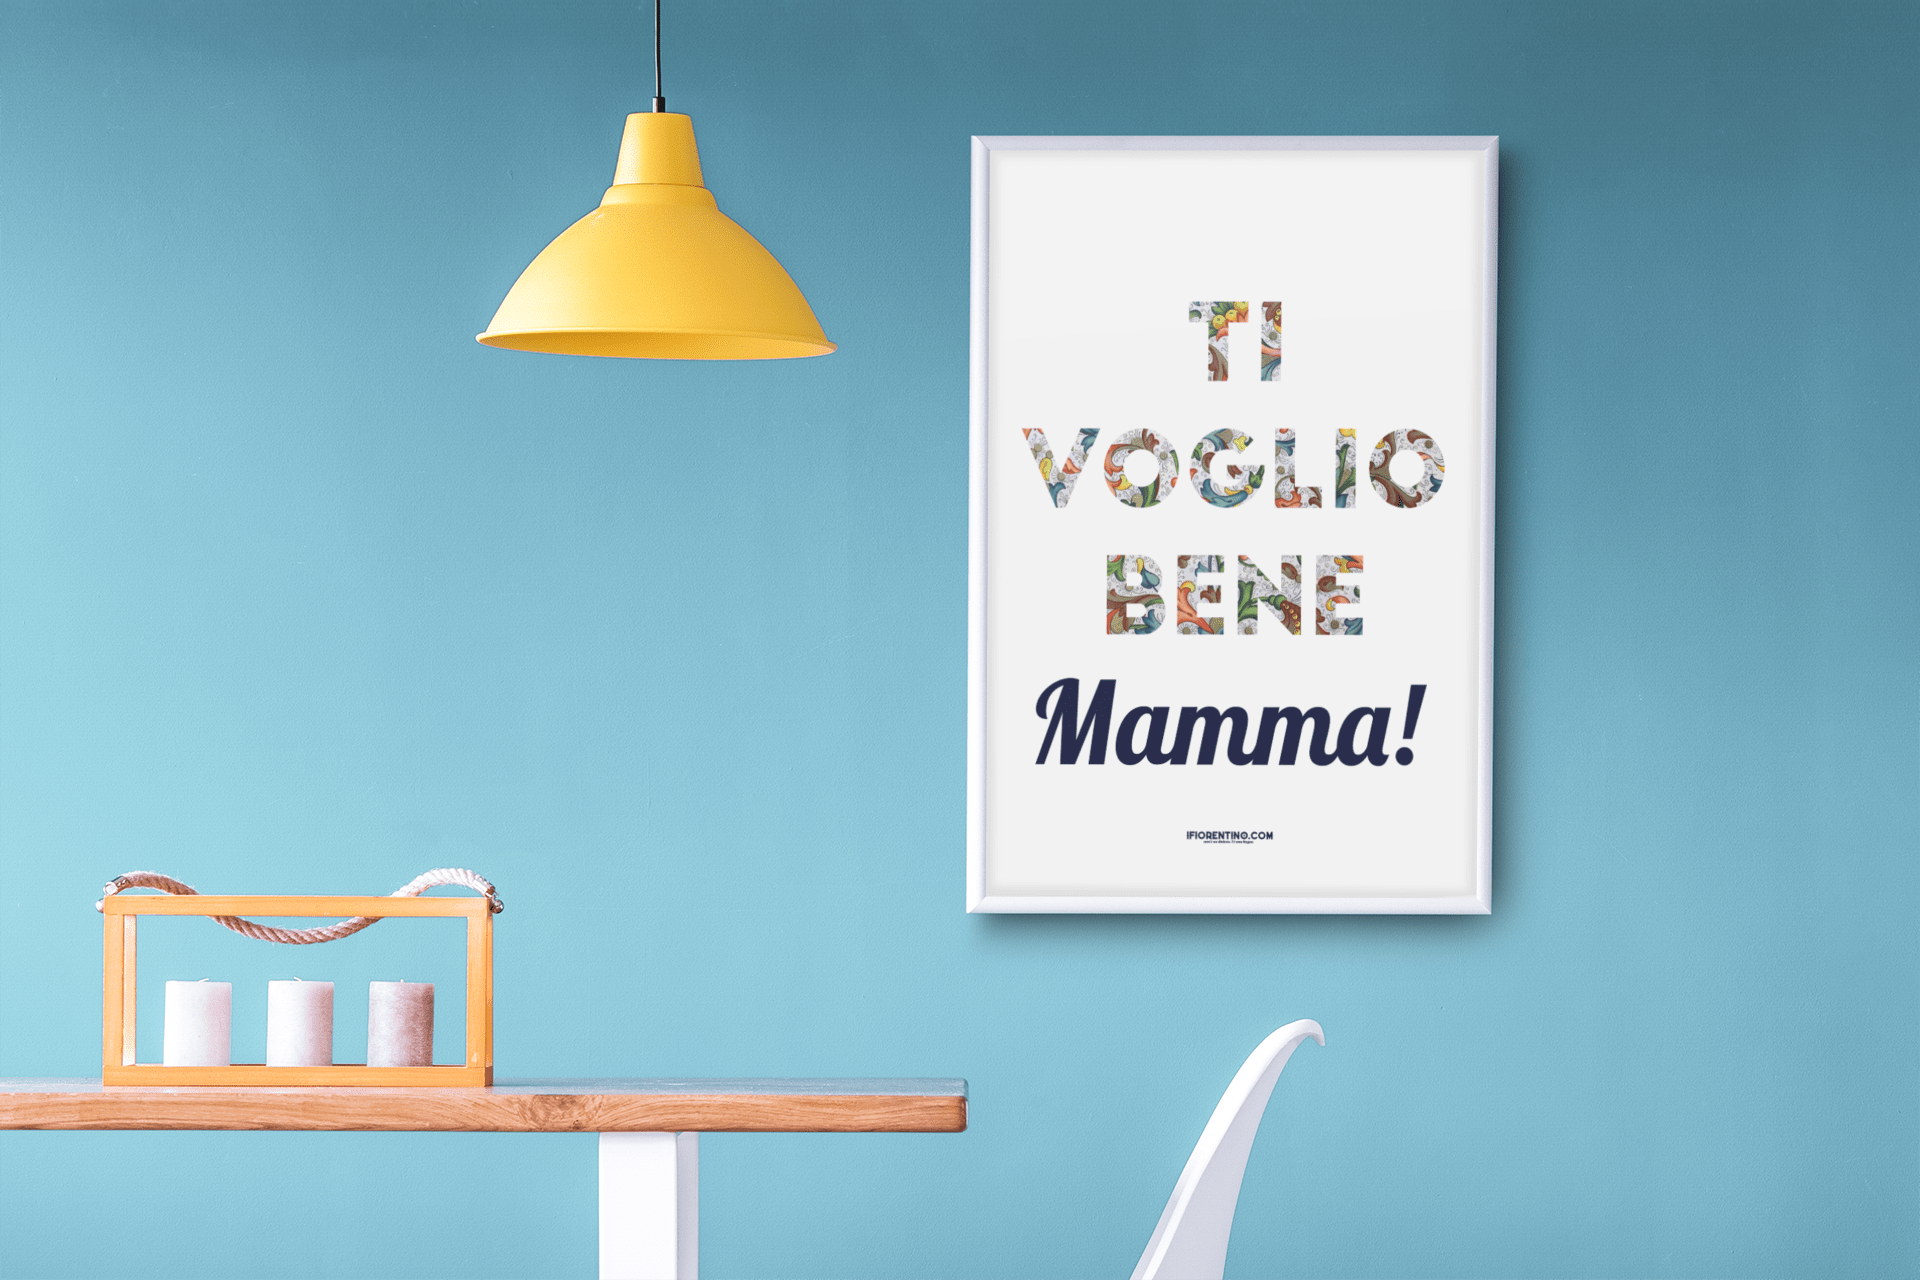 TI VOGLIO / VOGLIAMO BENE MAMMA! con CARTA FIORENTINA - poster fiorentini - poster firenze - regalo fiorentino - fiorentino  - foppeddittelo